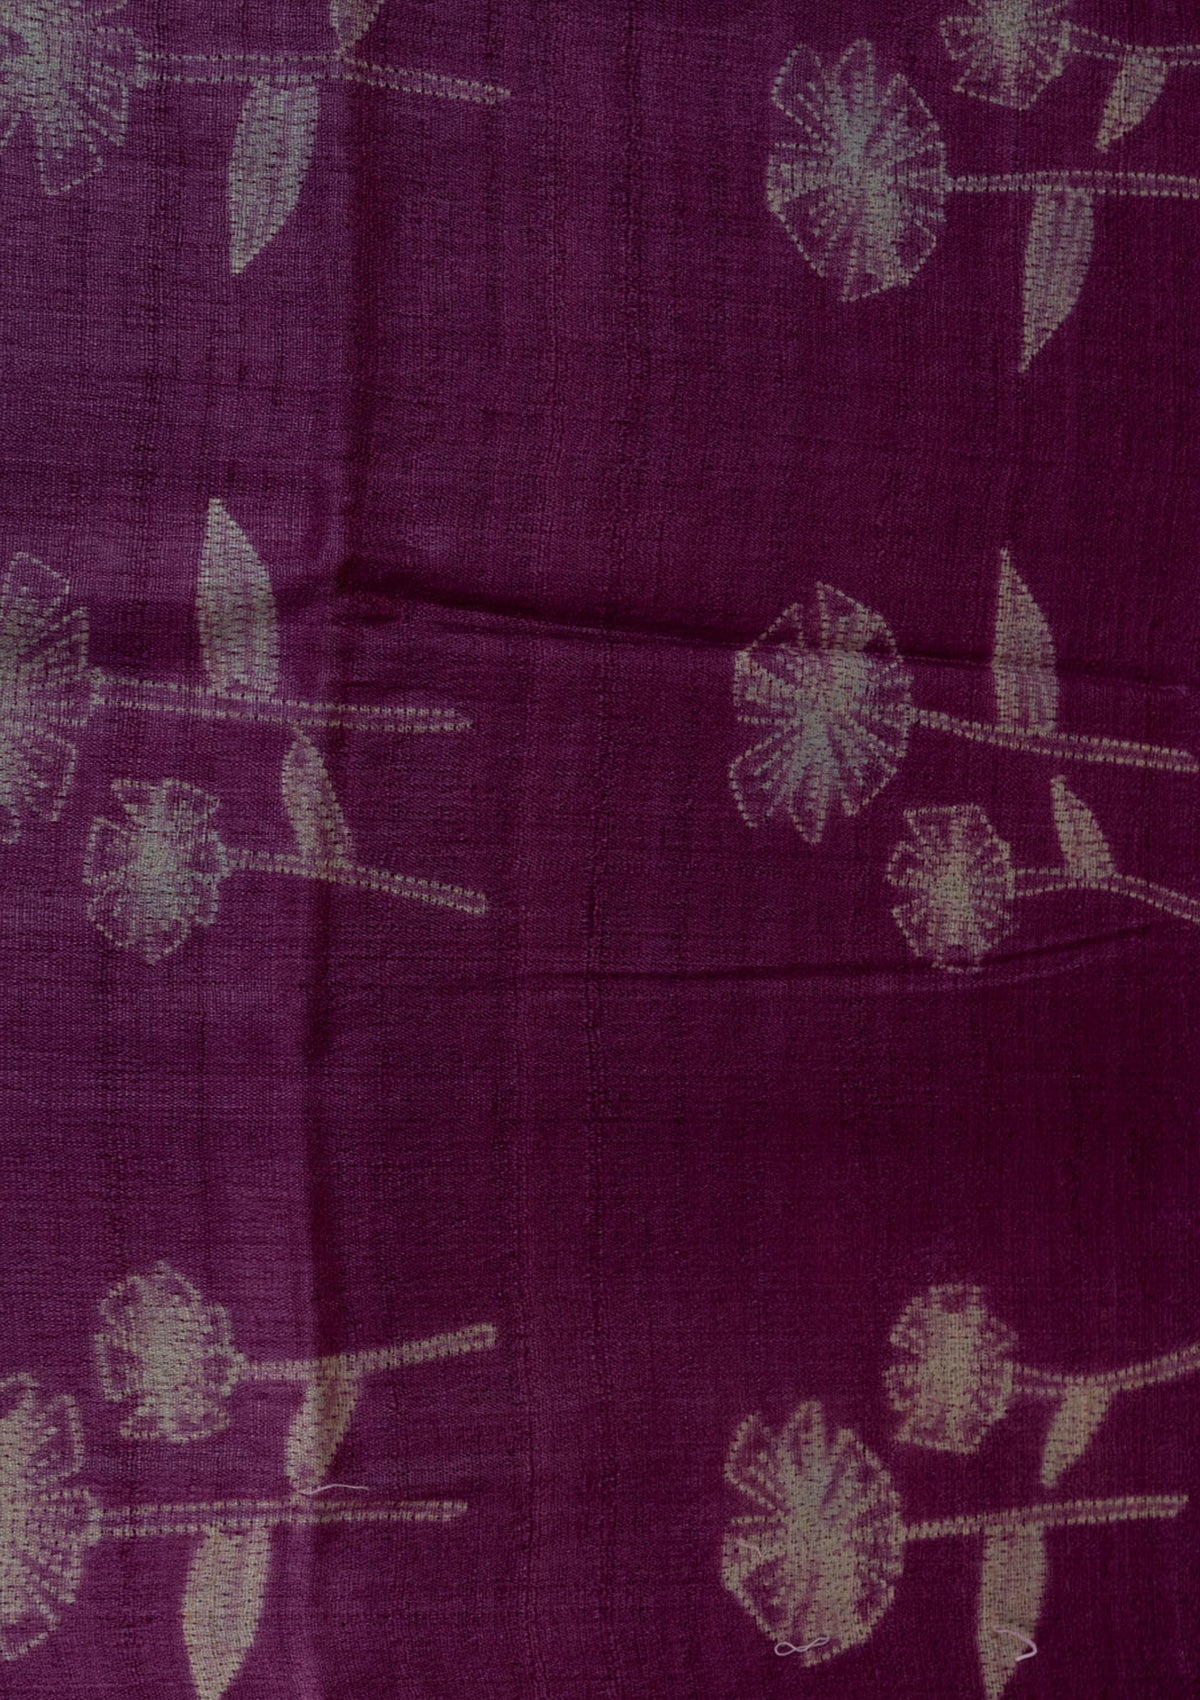 Handwoven Dark Wine Shibori Fabric